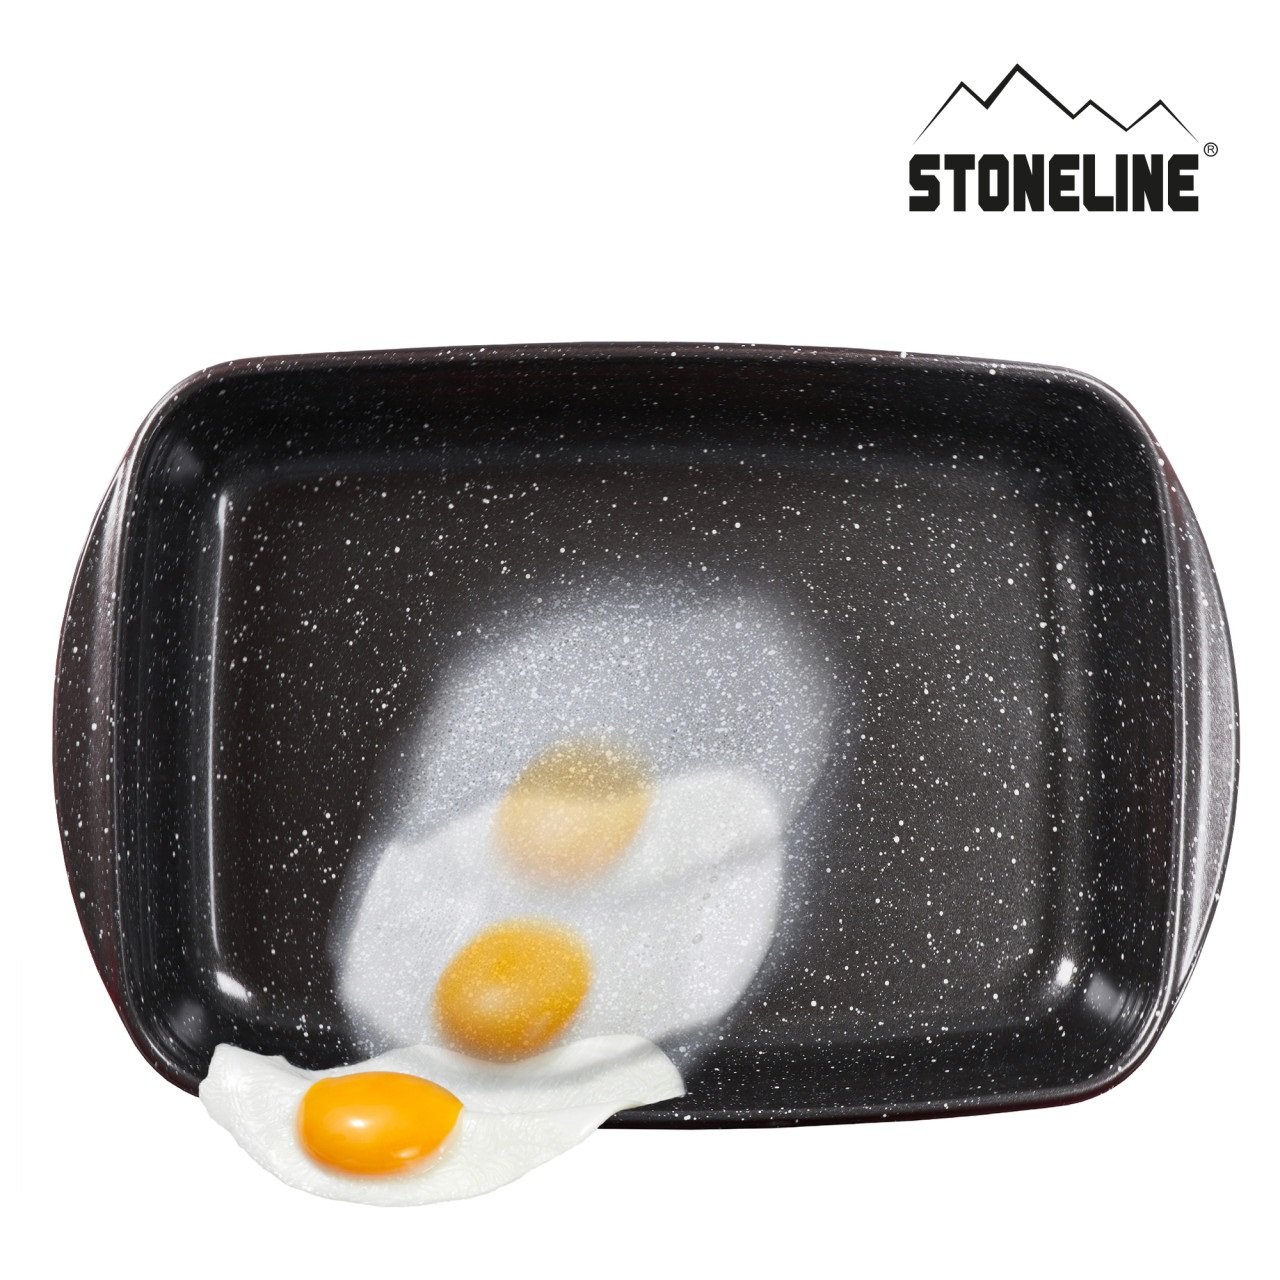 STONELINE® Borosilicate glass casserole dish set with coating